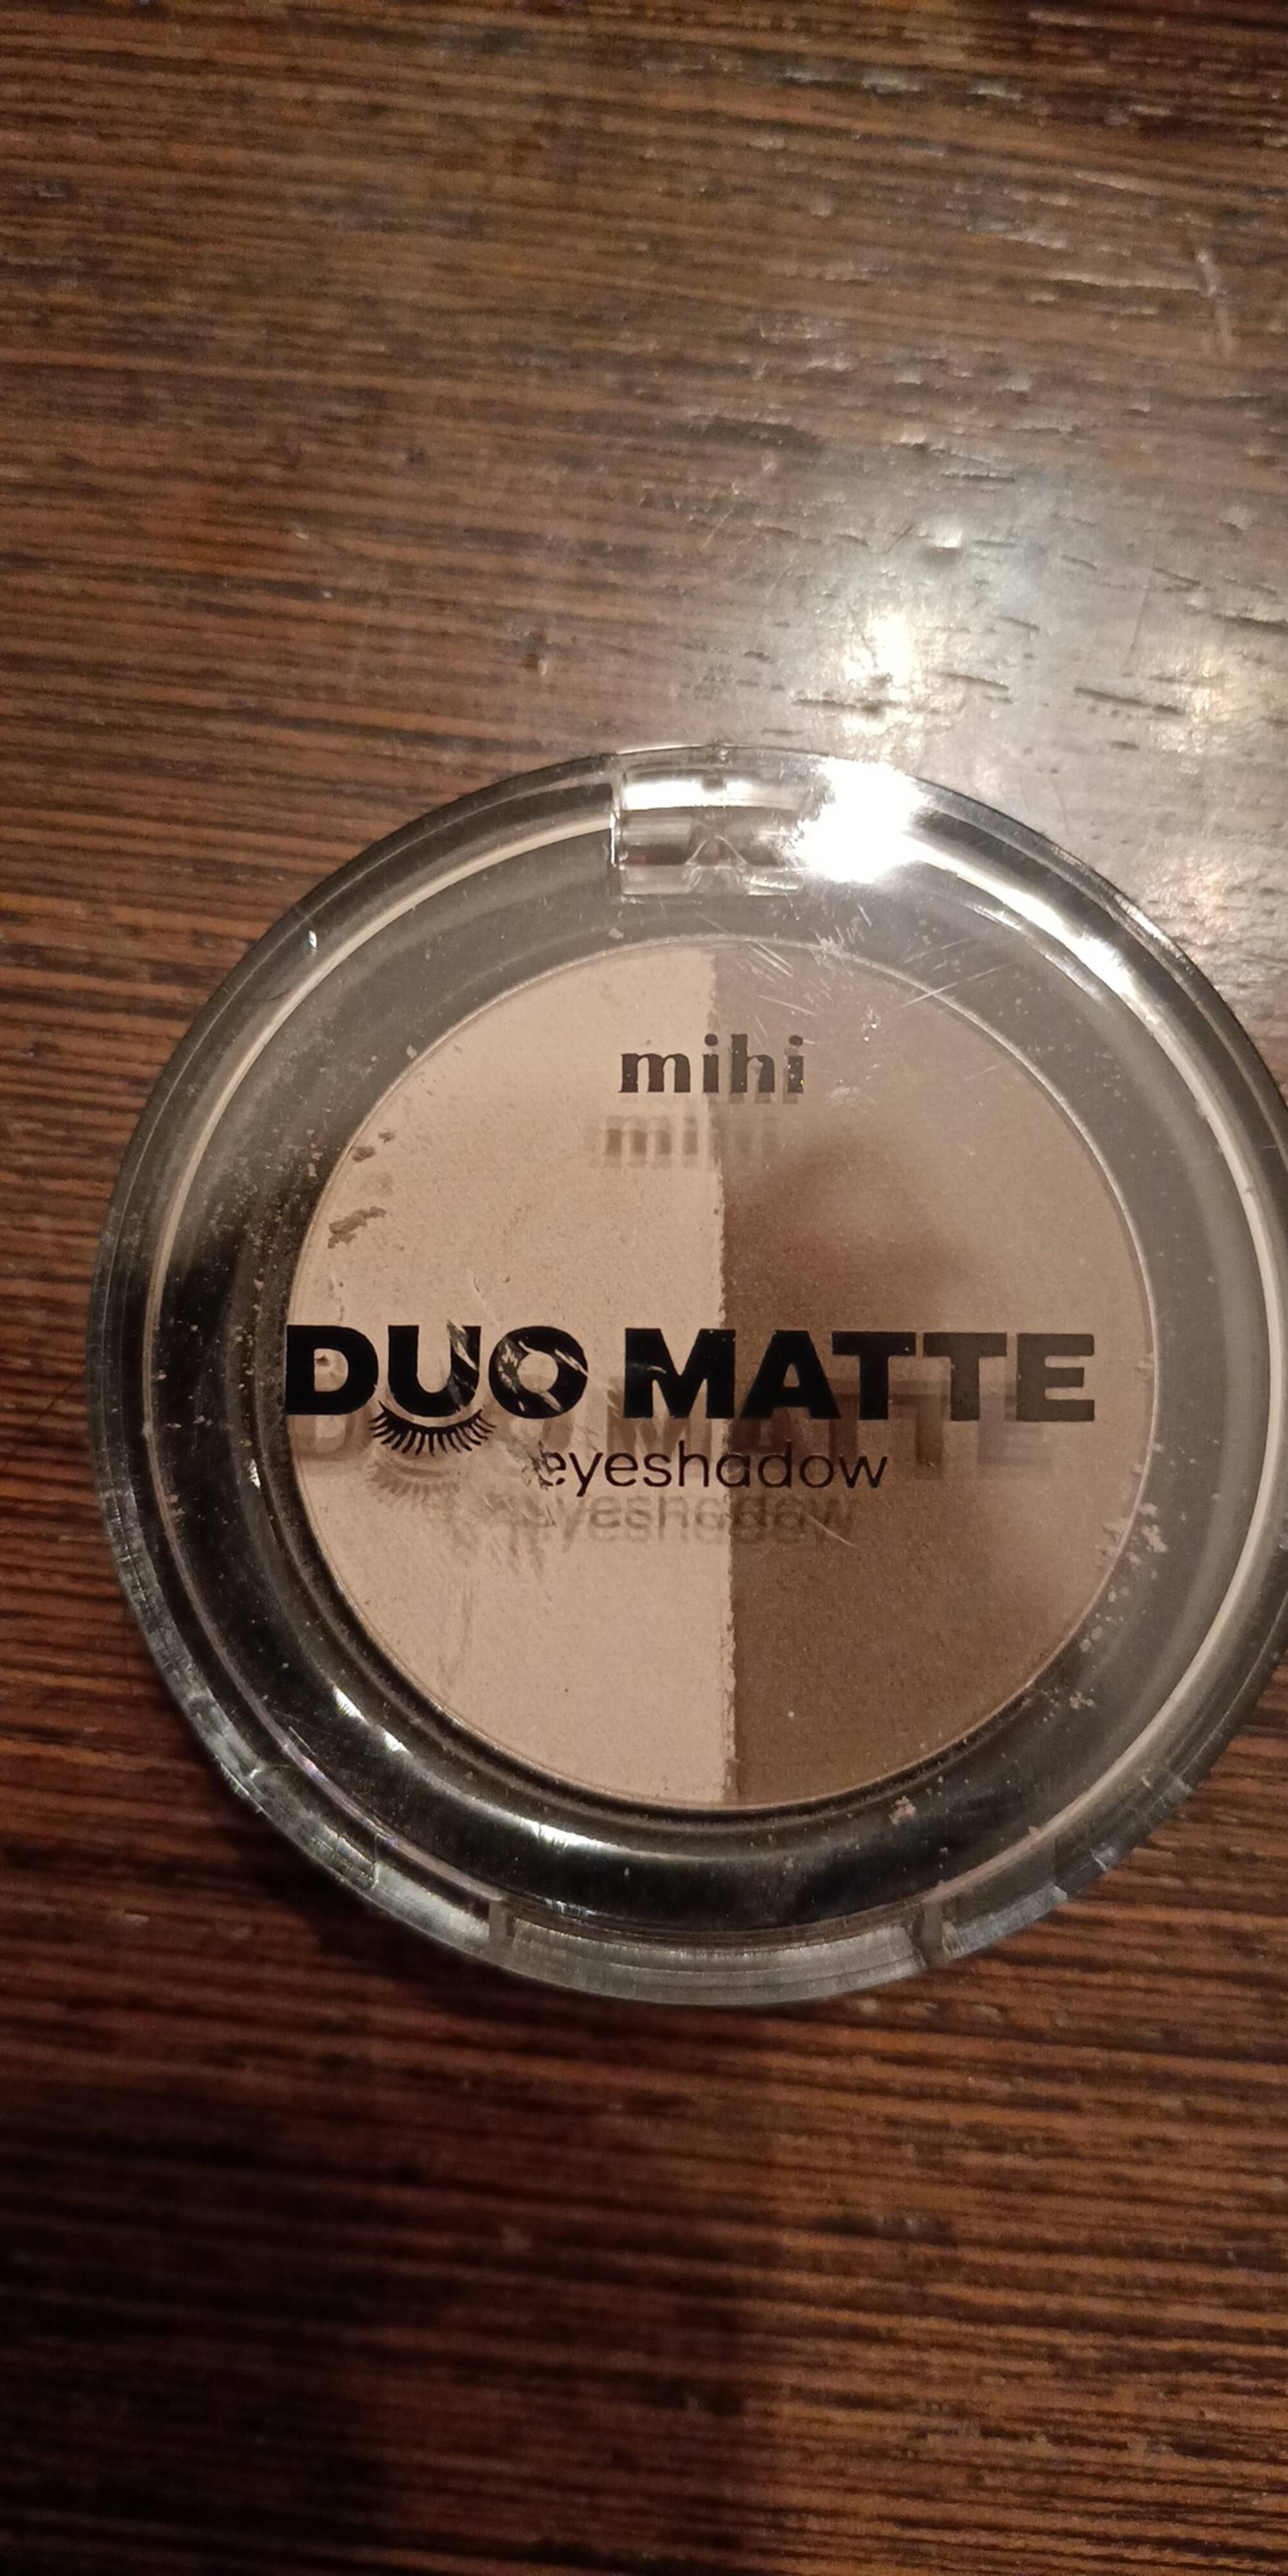 MIHI - Duo matte eyeshadow